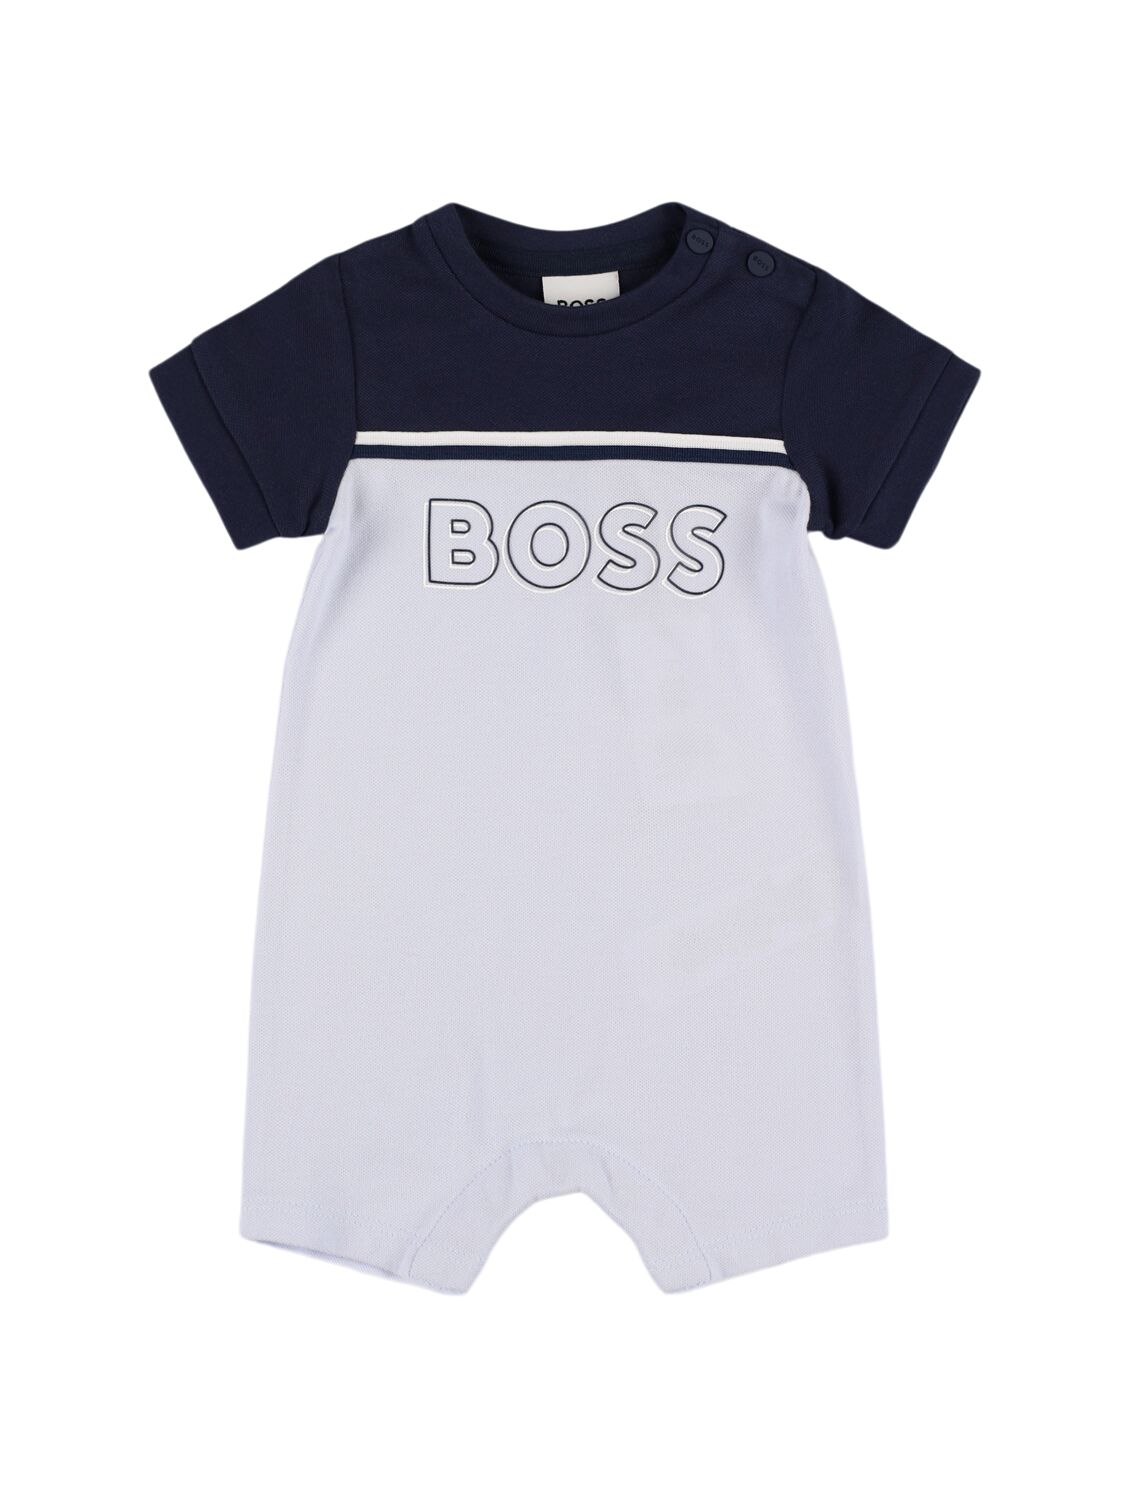 Hugo Boss Babies' Cotton Piquet Romper In Light Blue